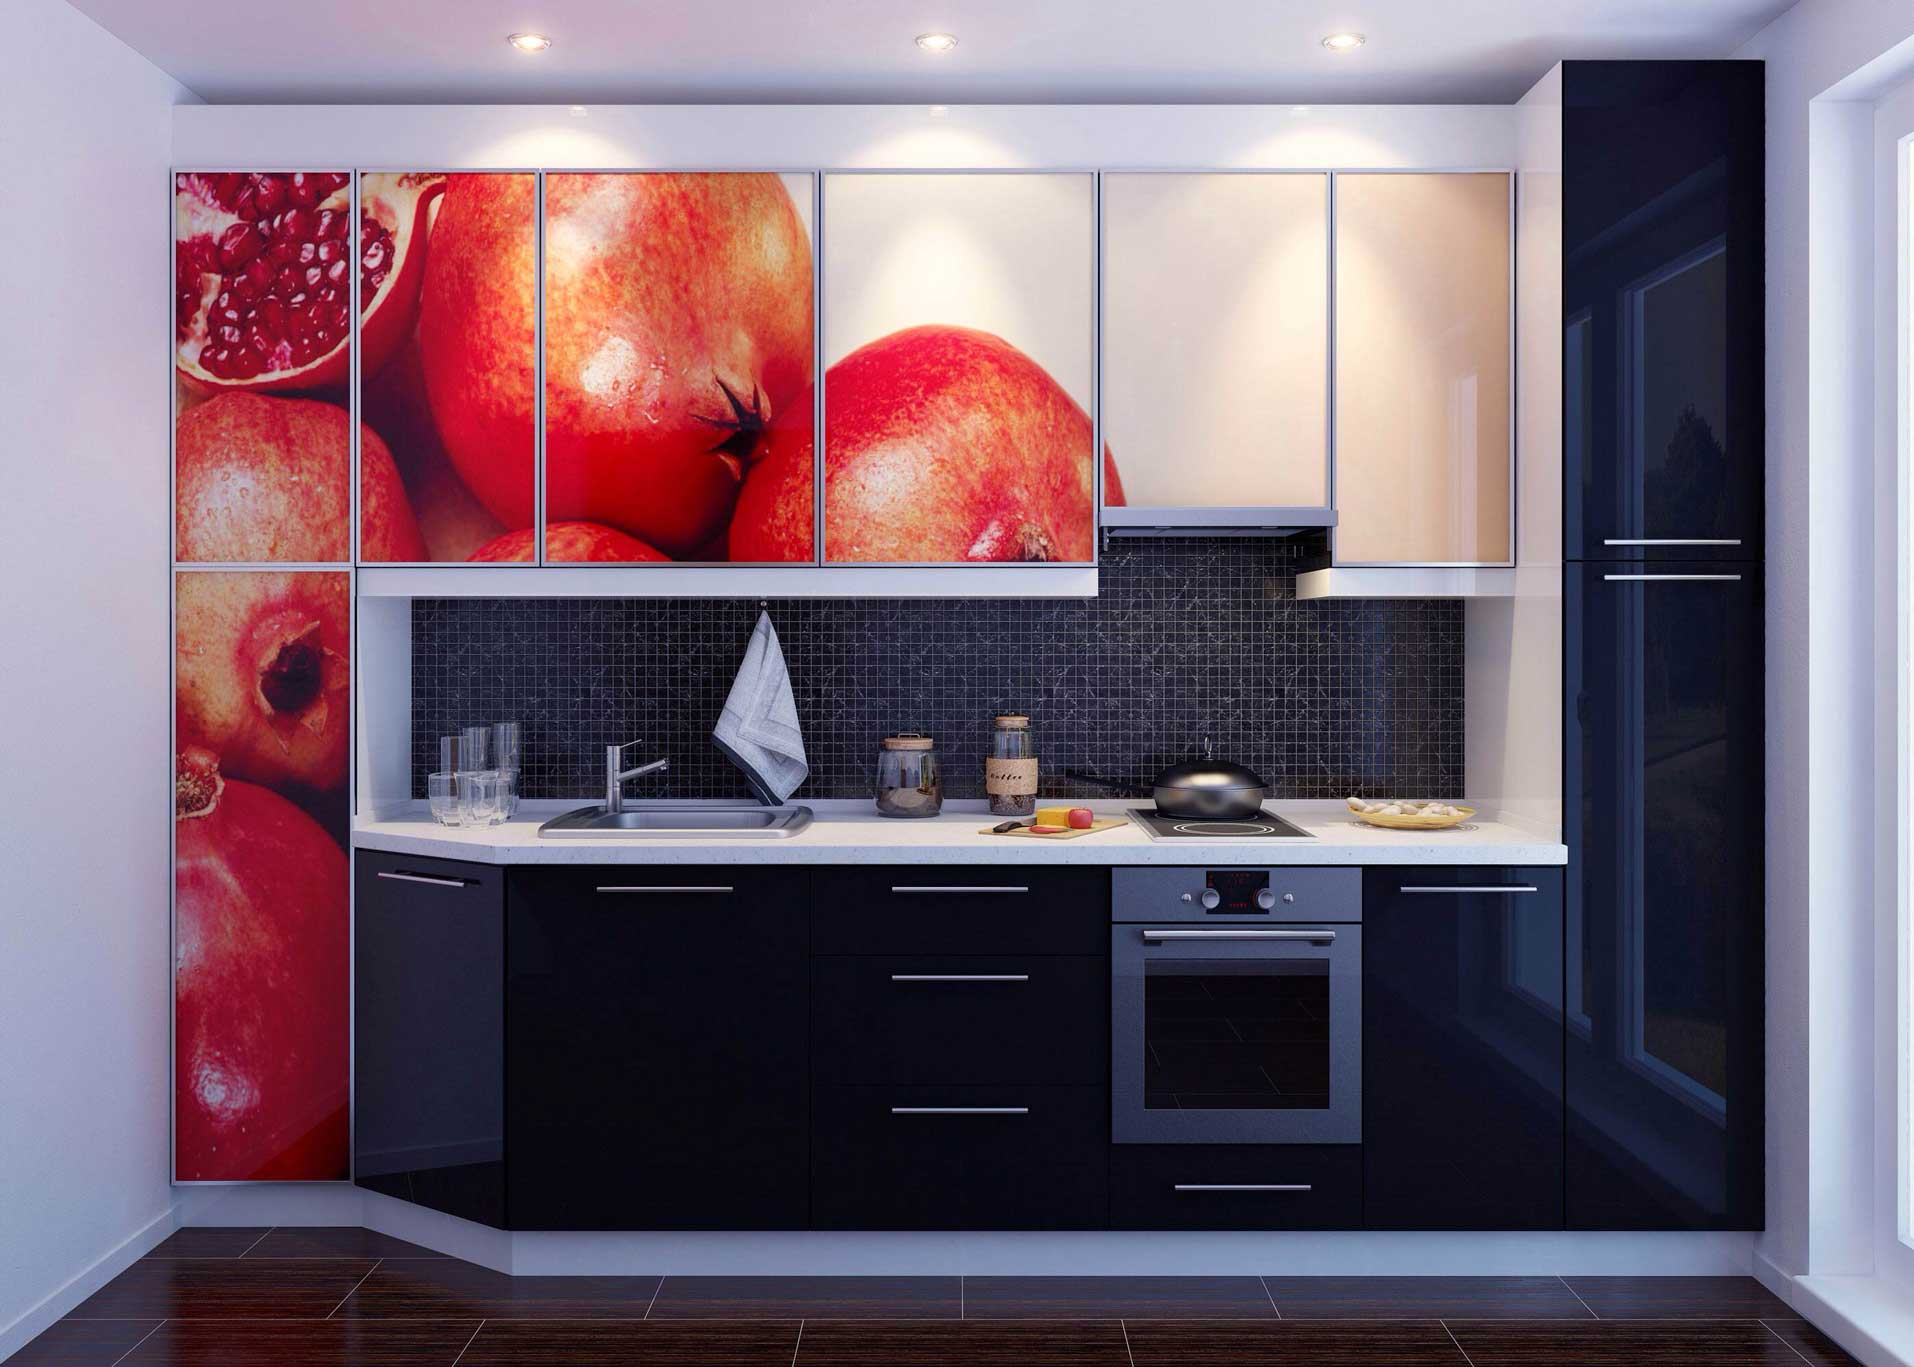 Обеденная зона на кухне: зонирование, свет и отделка. как выделить и оформить с помощью простых идей? (170+фото)